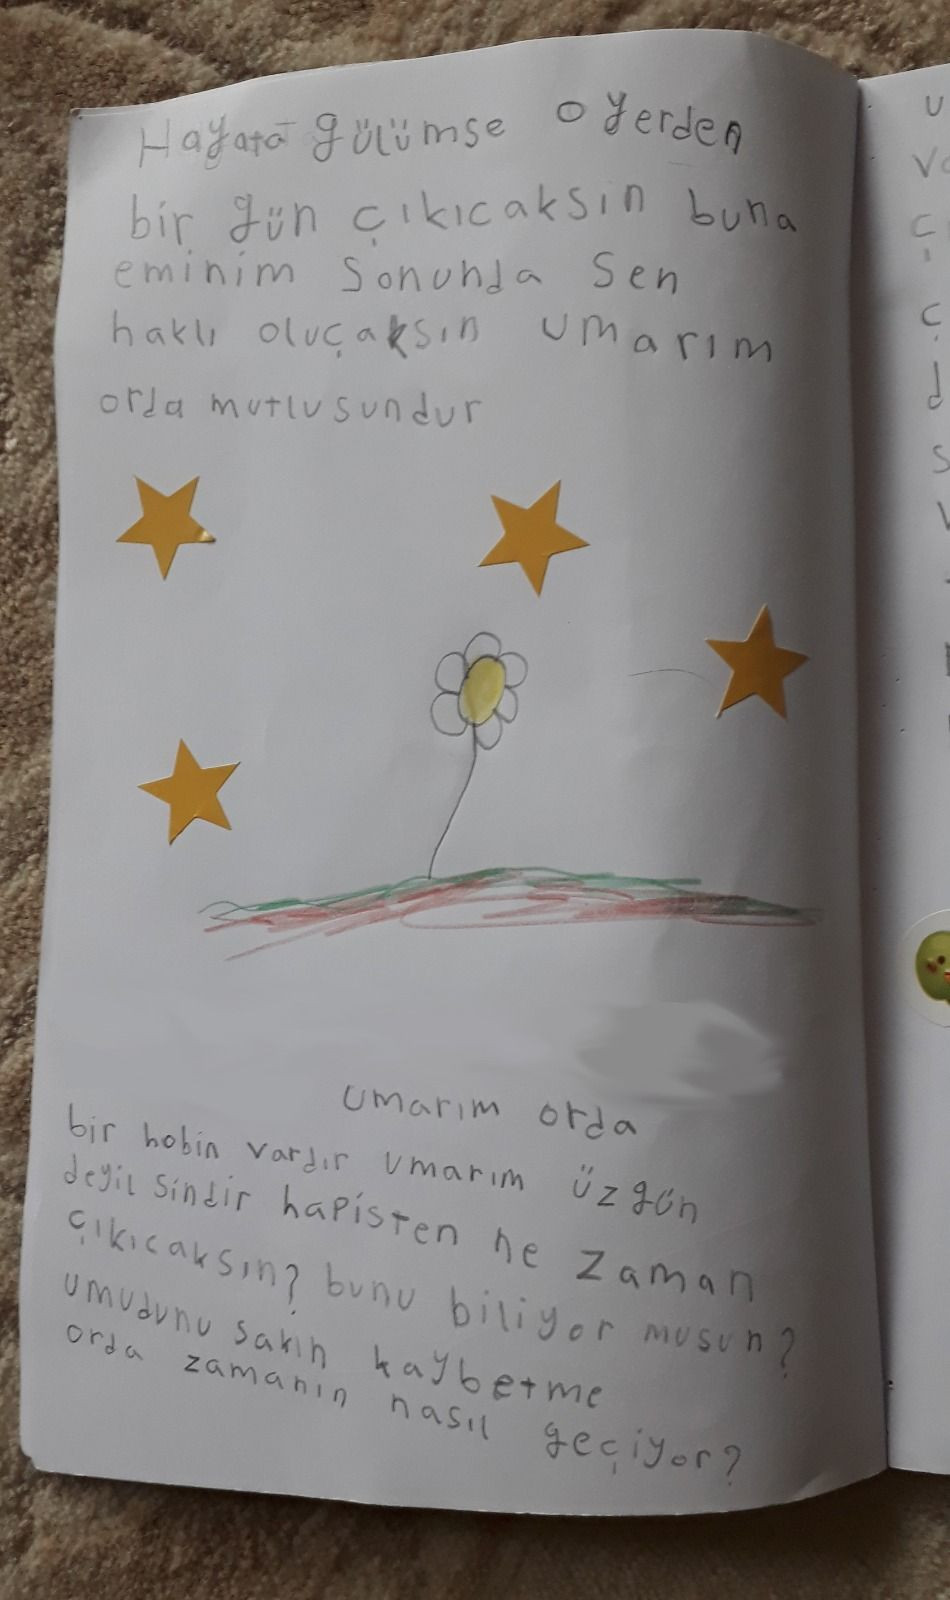 Çocuklardan Demirtaş'a mektup ve harçlık: Umudunu kaybetme, hayata gülümse - Sayfa 1